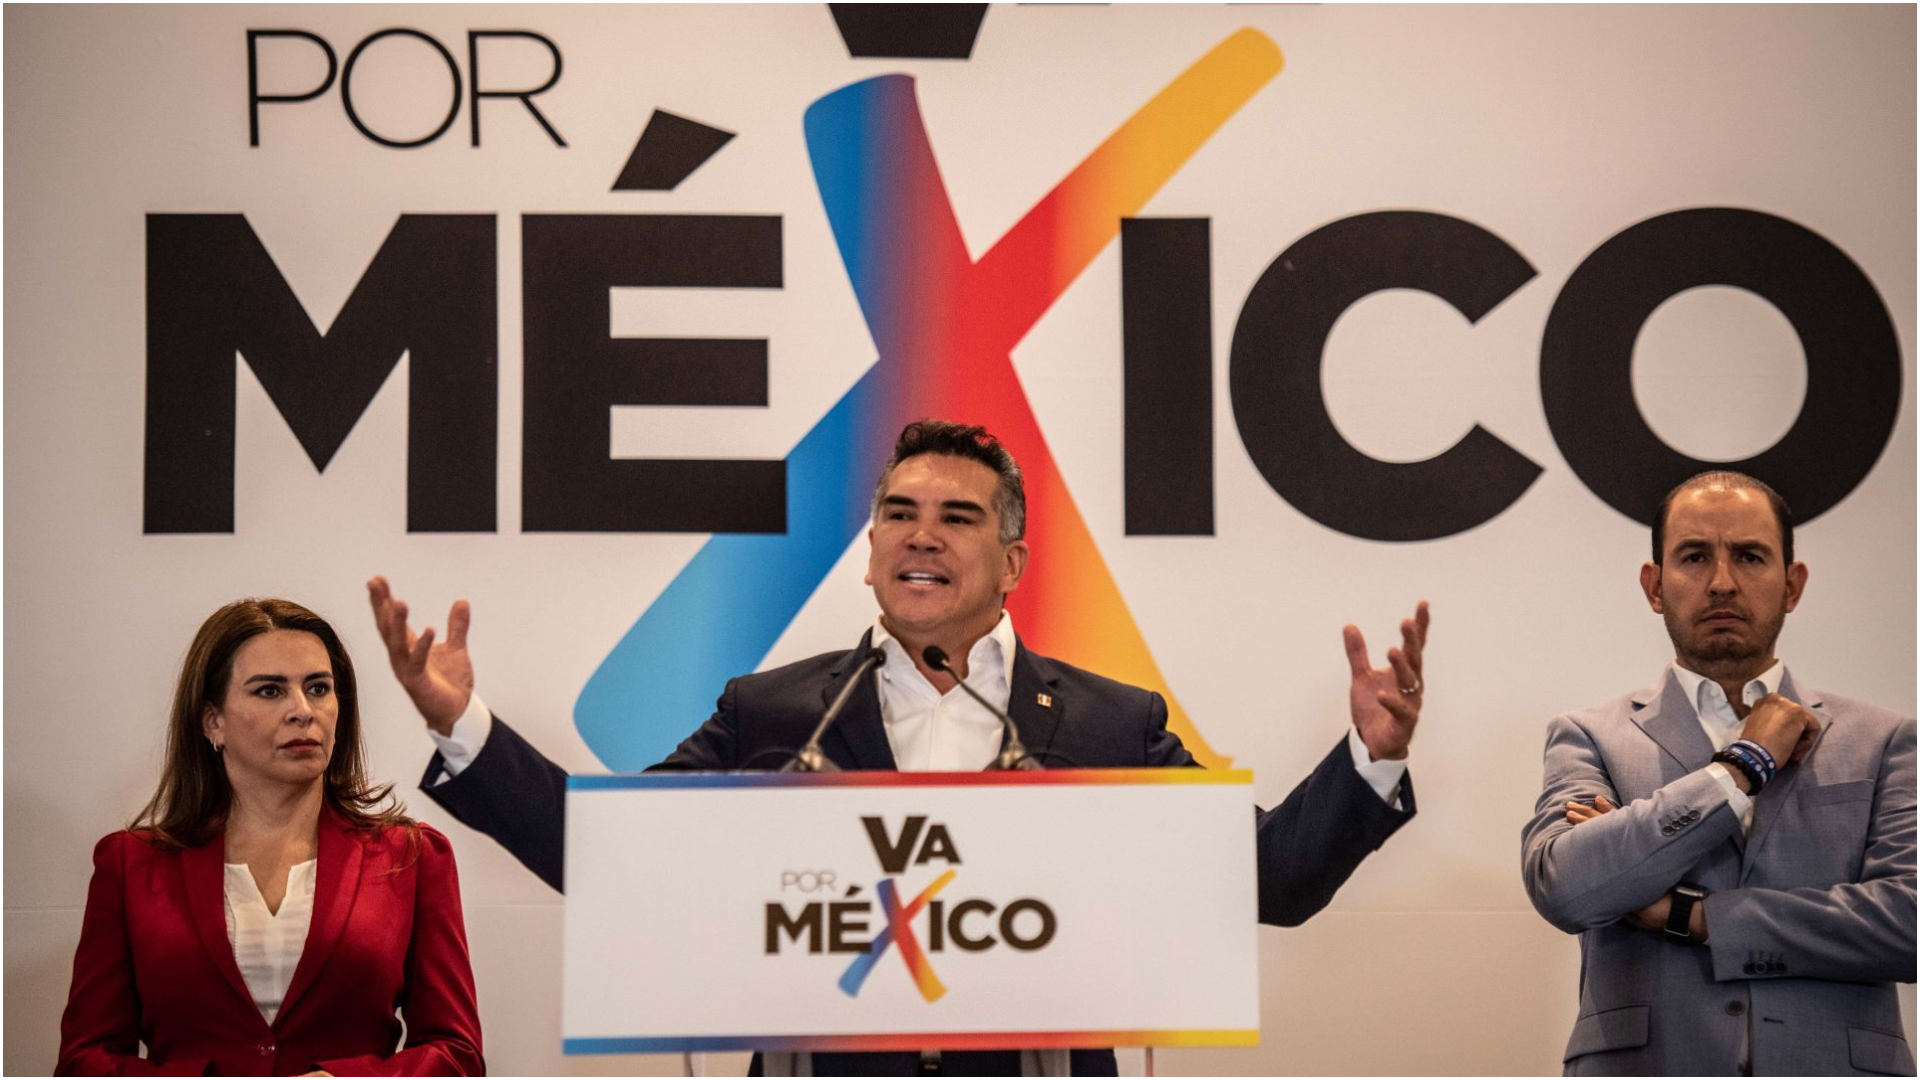 Alito Moreno prometió que Va por México tendrá una candidatura presidencial  “robusta” en 2024 - Infobae